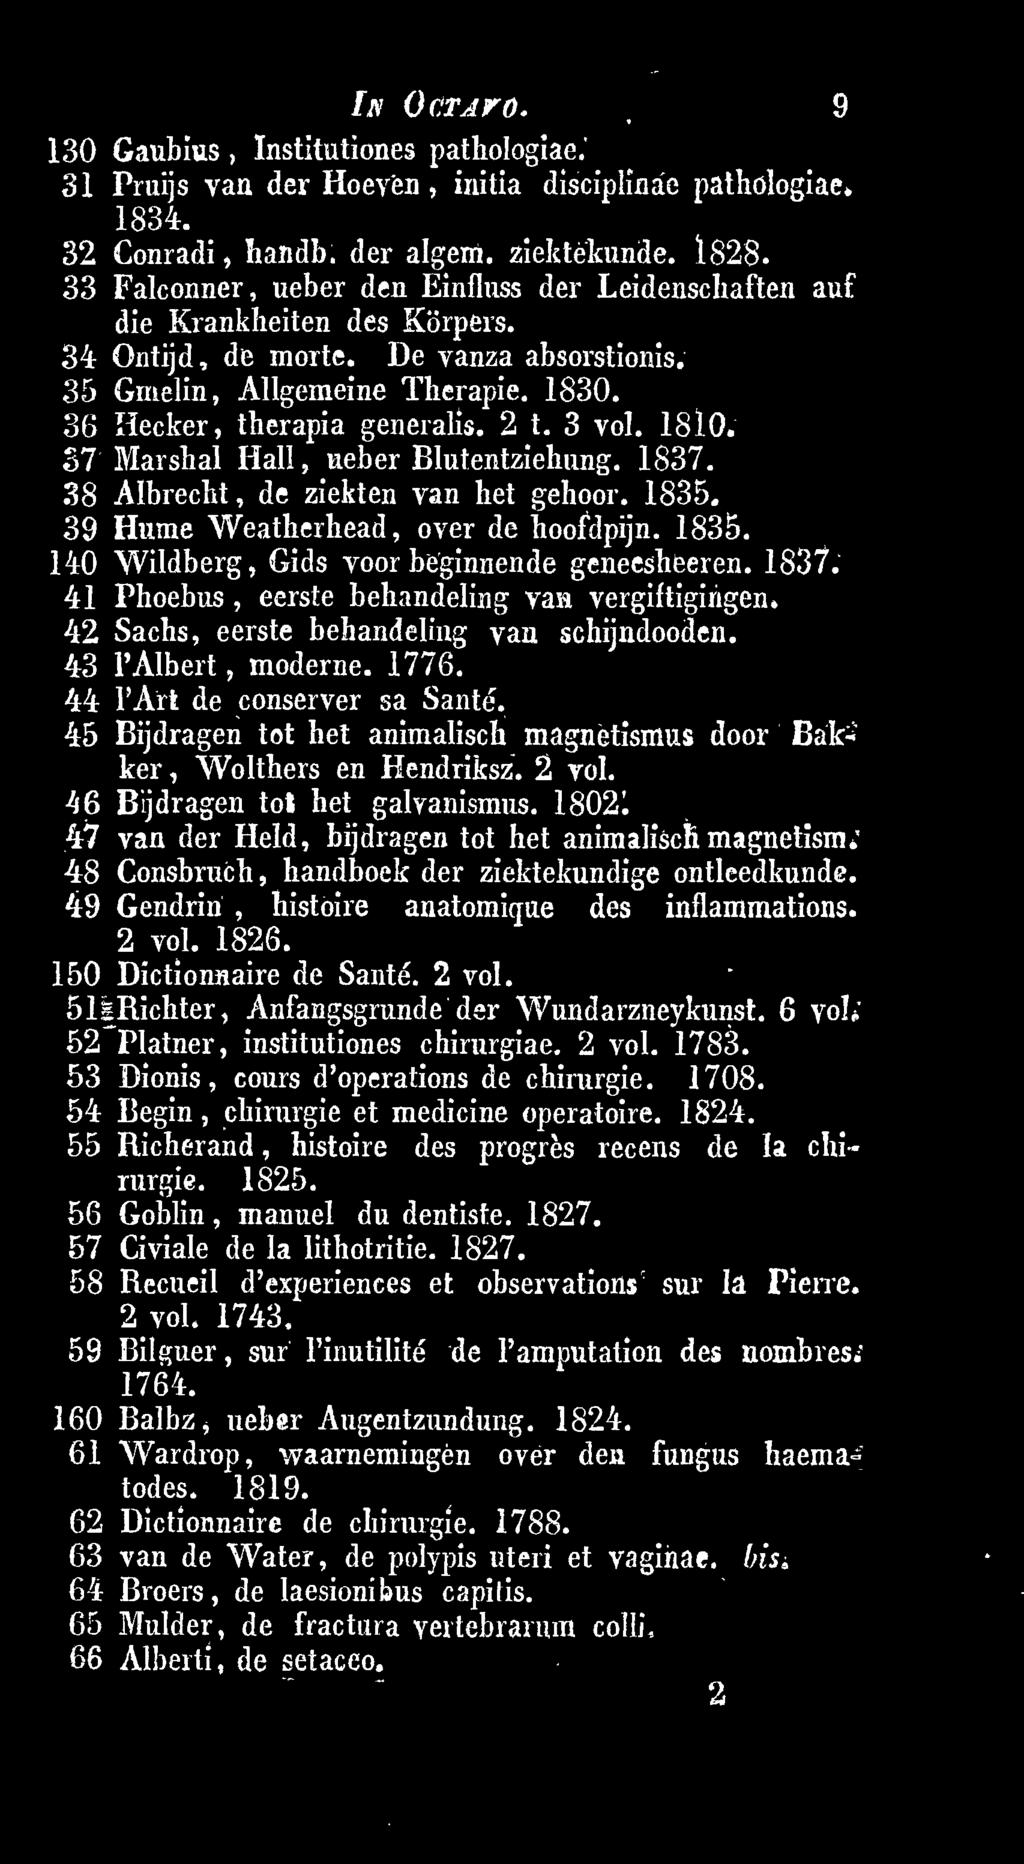 45 Bijdragen tot het animalisch magnetismus door Bakker, Wolthers en Hendriksz. 2 vol. 46 Bijdragen tot het galvanismus. 1802. 47 van der Held, bijdragen tot het animalisclimagnetism.